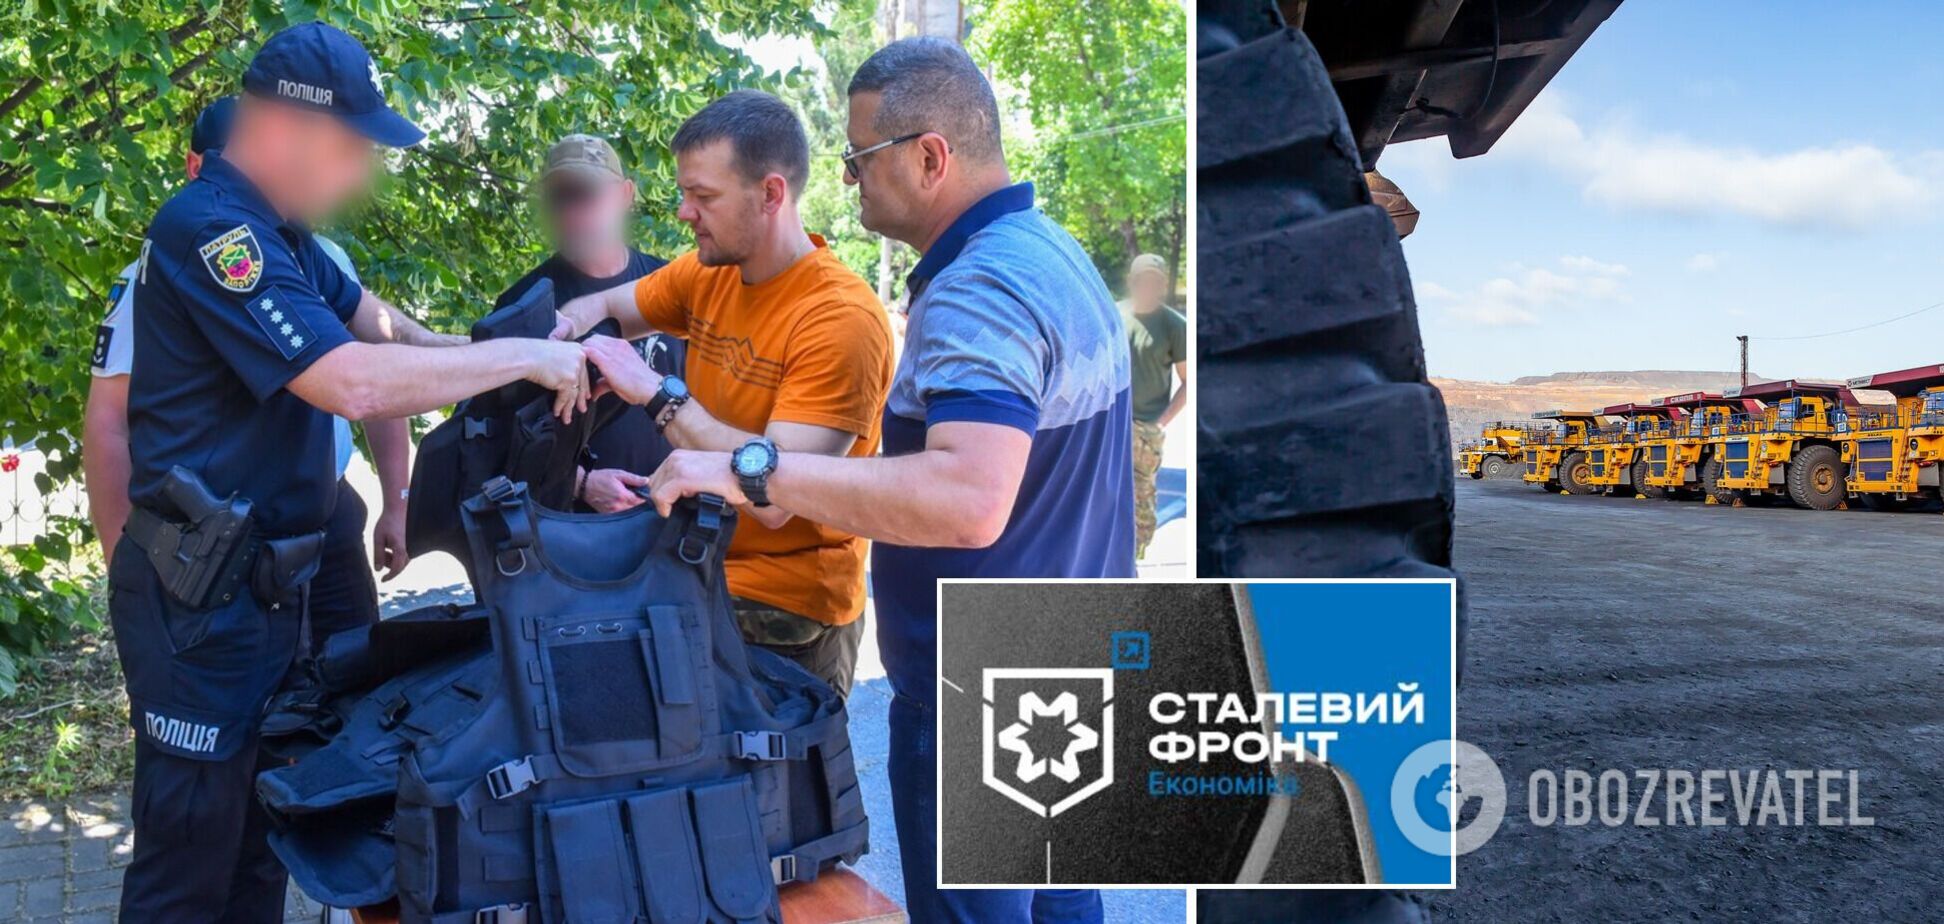 Сталевий фронт Ахметова: ЗСУ отримали бронежилети, сотні авто та безплатне паливо